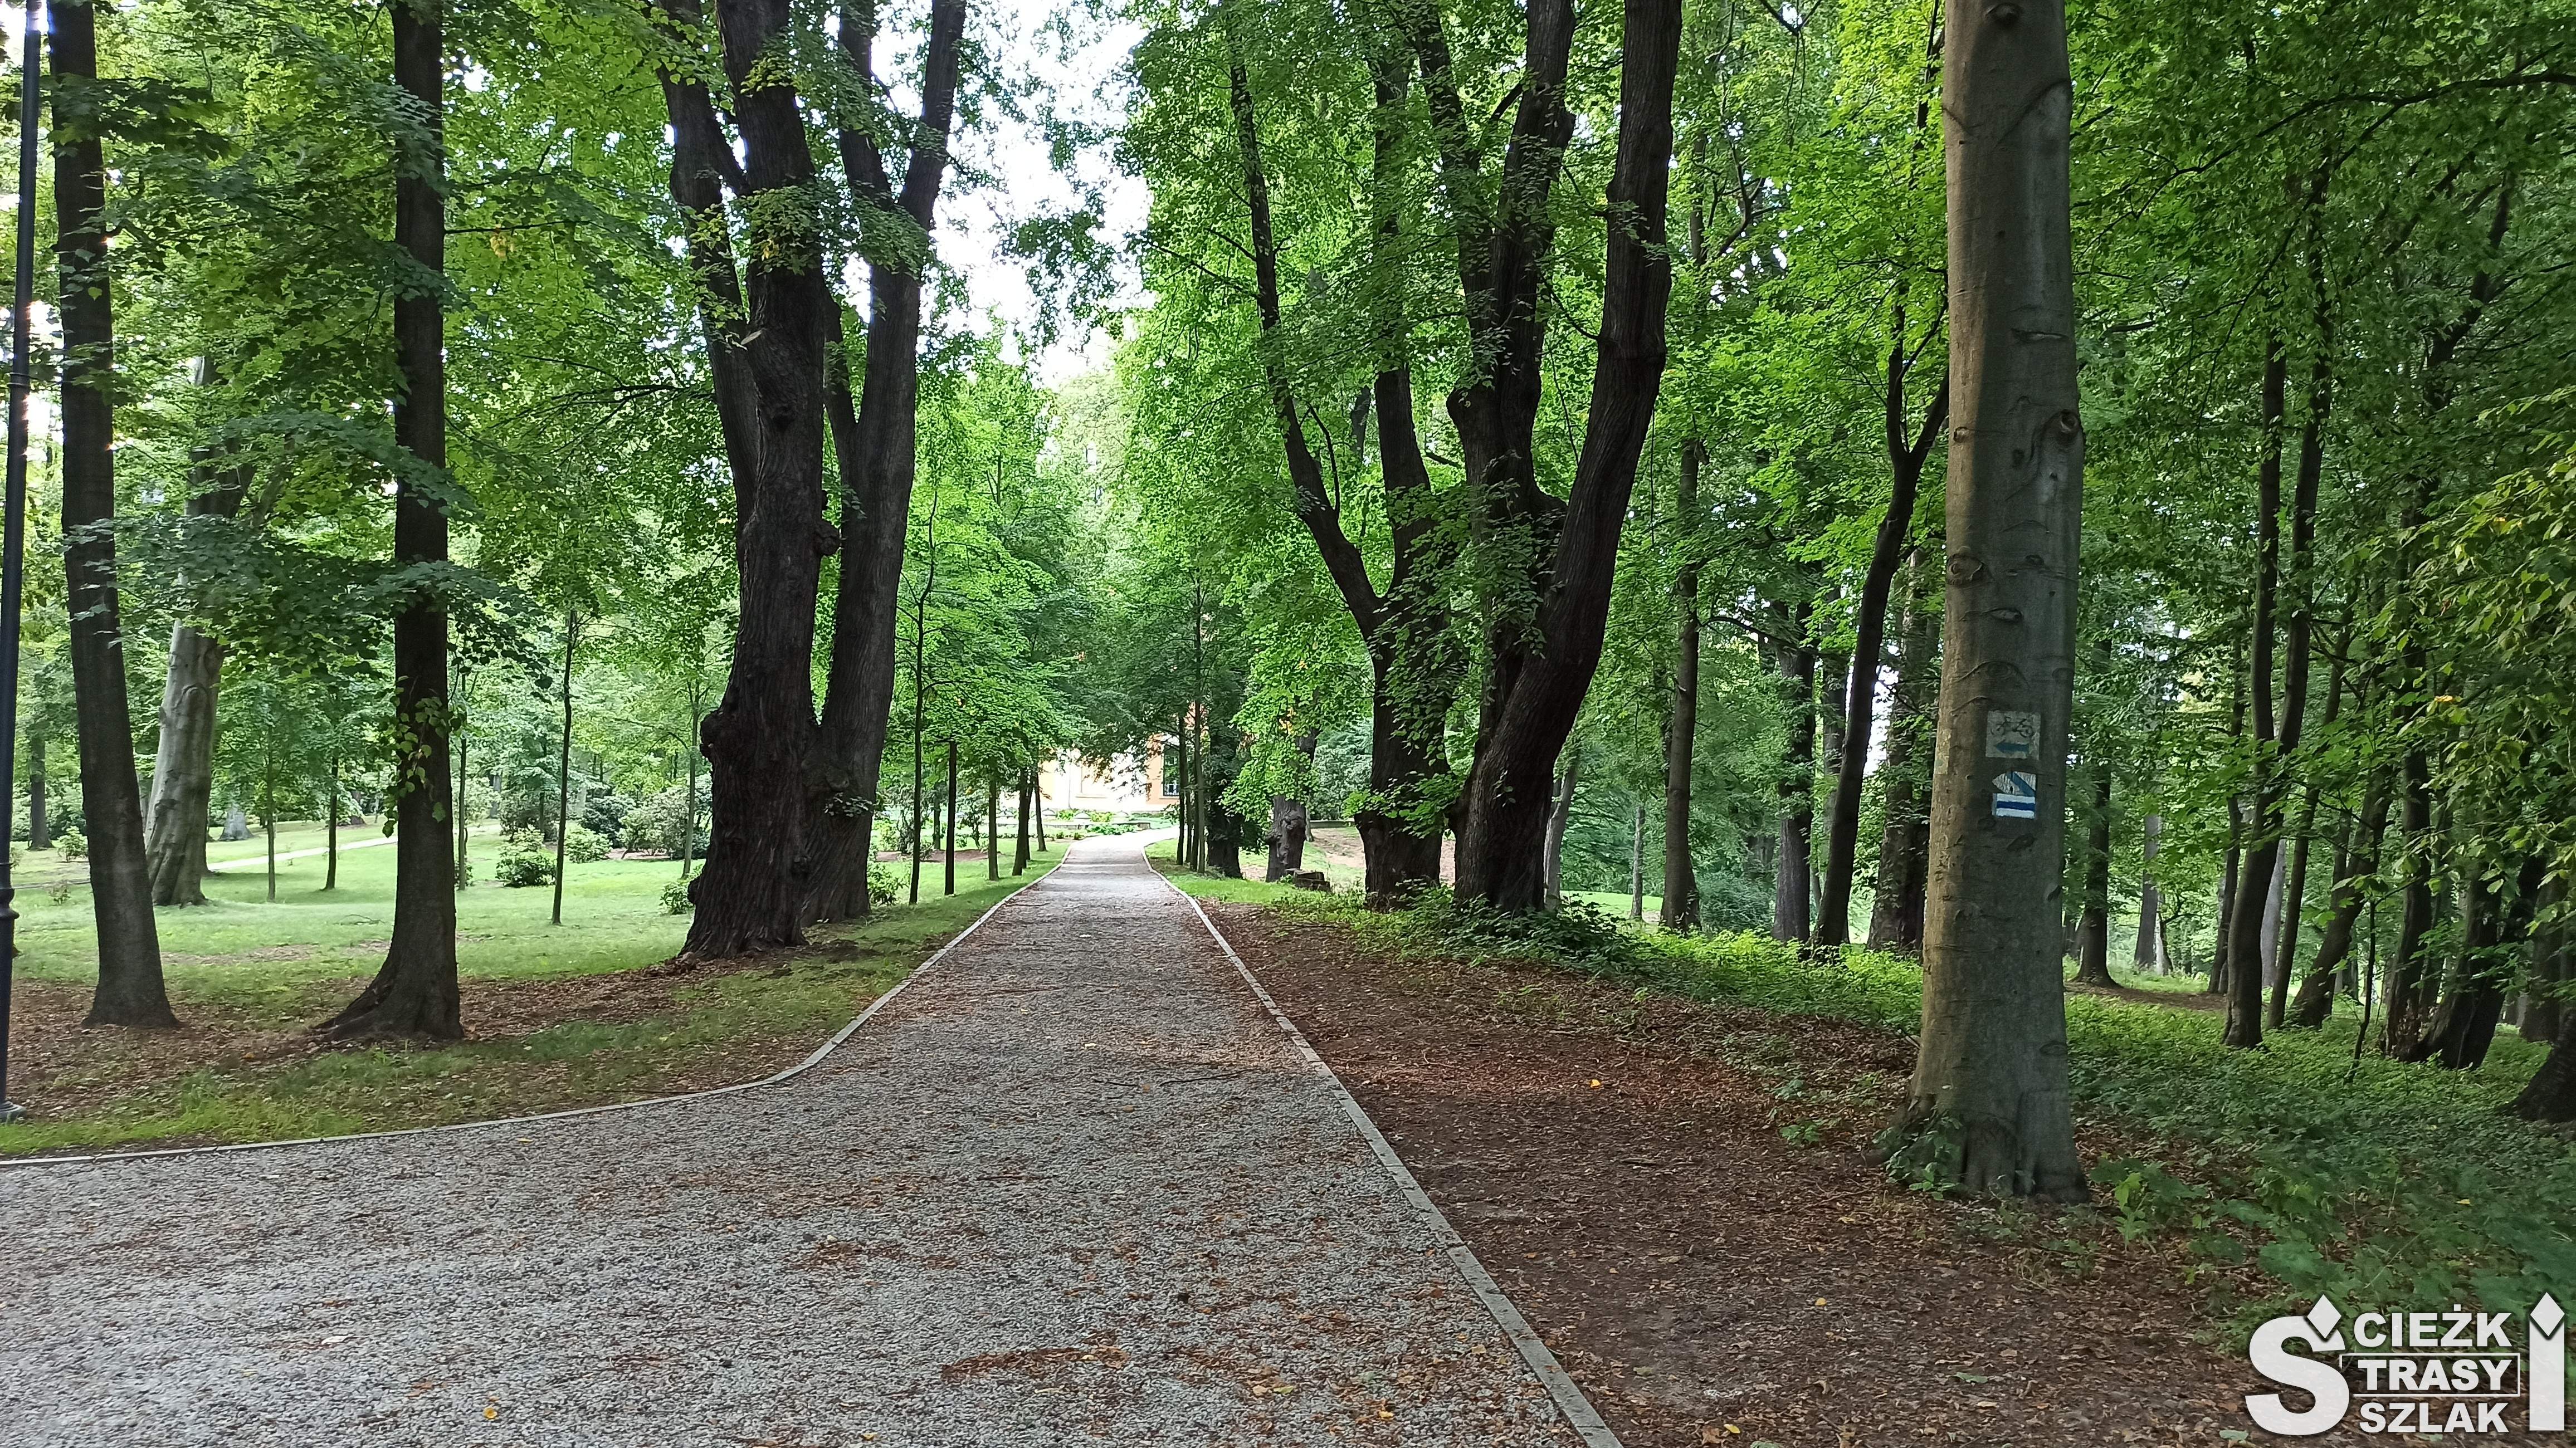 Niebieski szlak turystyczny i ścieżka rowerowa wśród drzew w Książańskim parku krajobrazowym